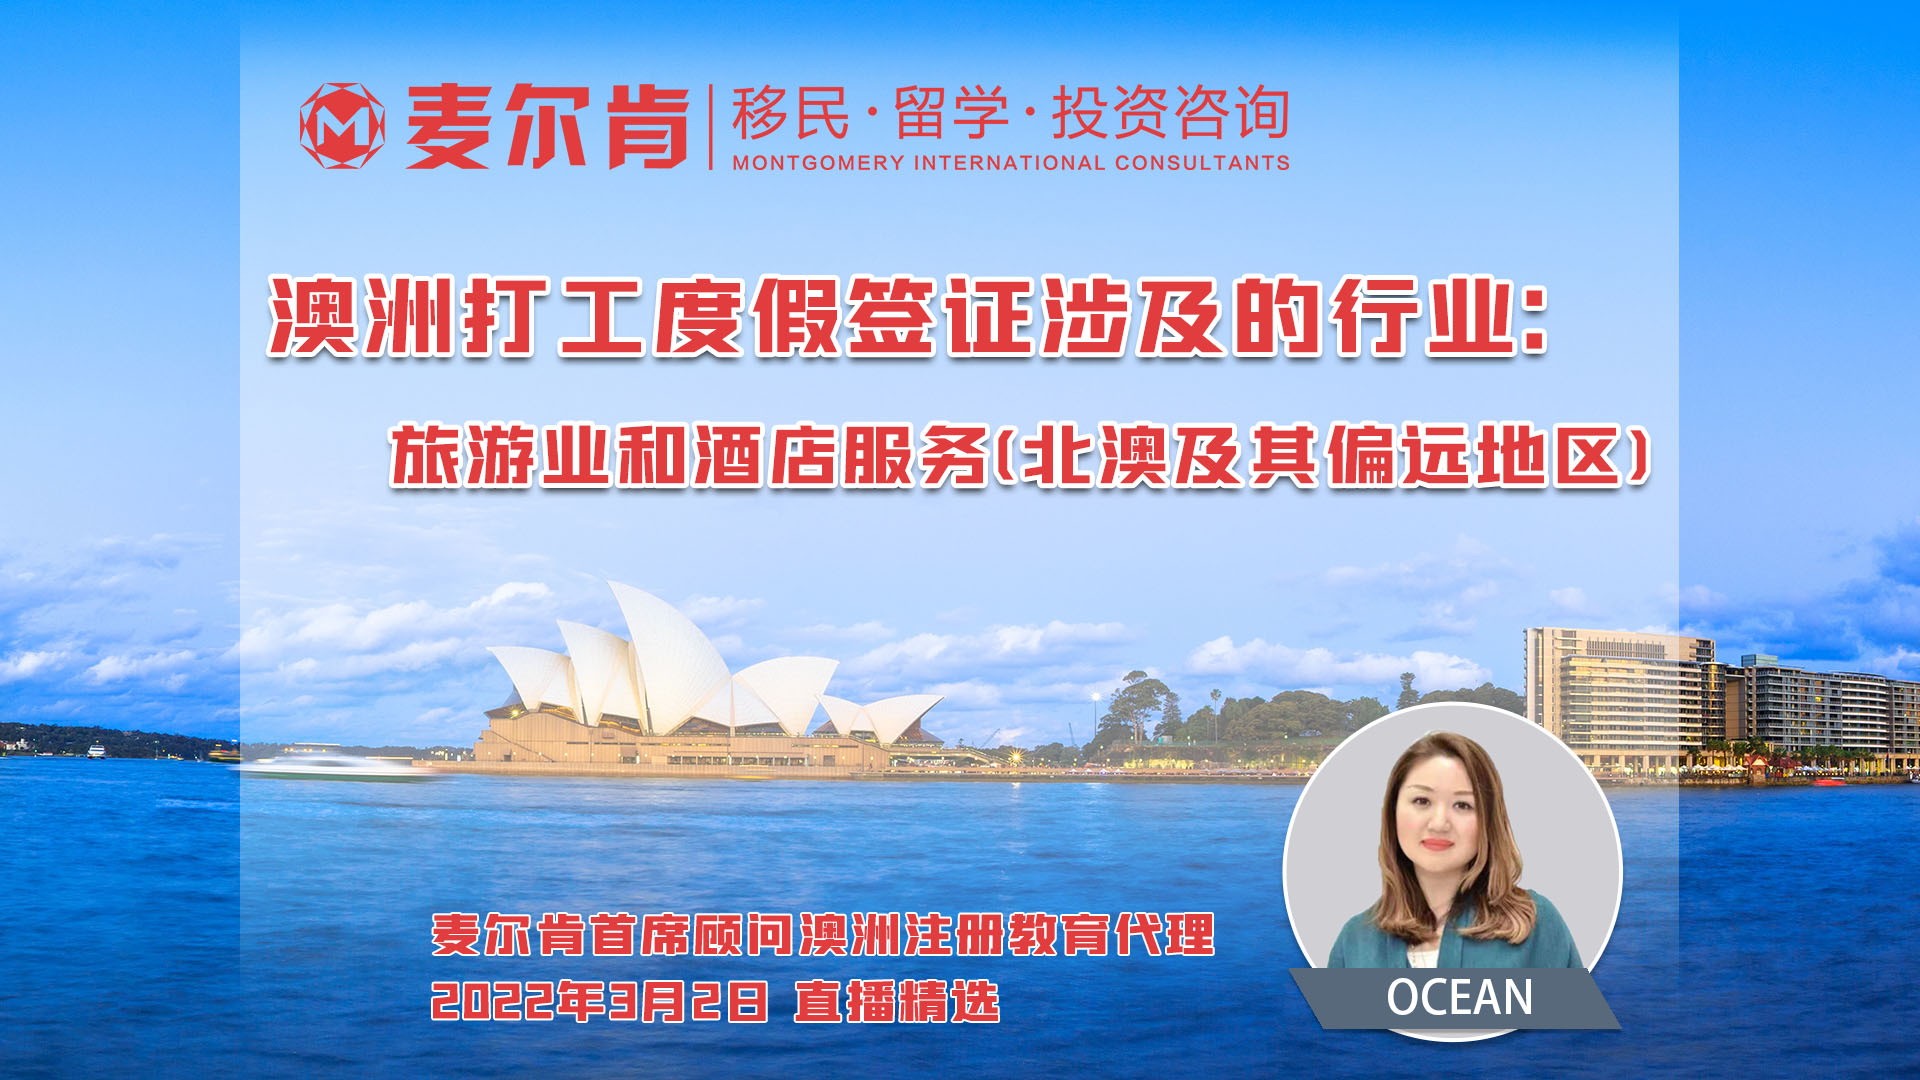 澳洲打工度假签证涉及的行业-旅游业和酒店服务(北澳及其偏远地区)